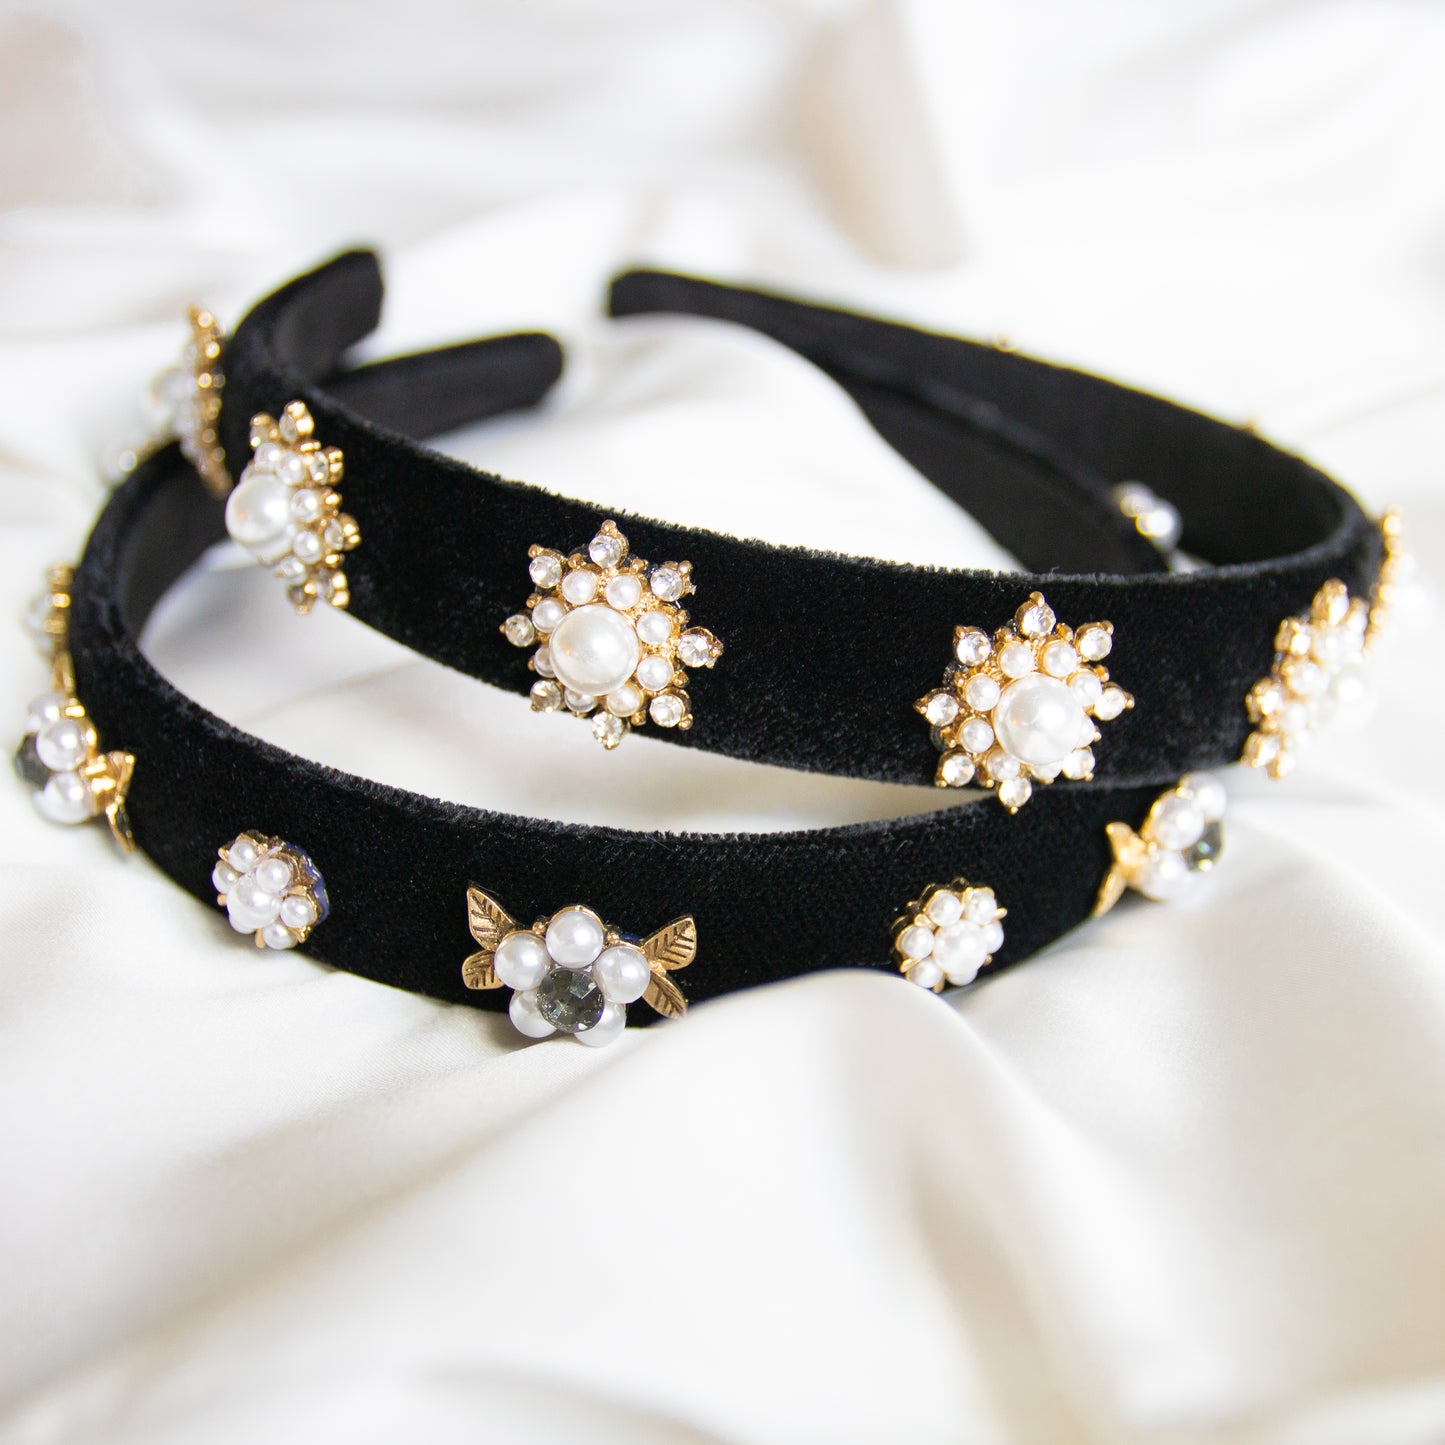 Embellished Snowflake Headband in Black Velvet